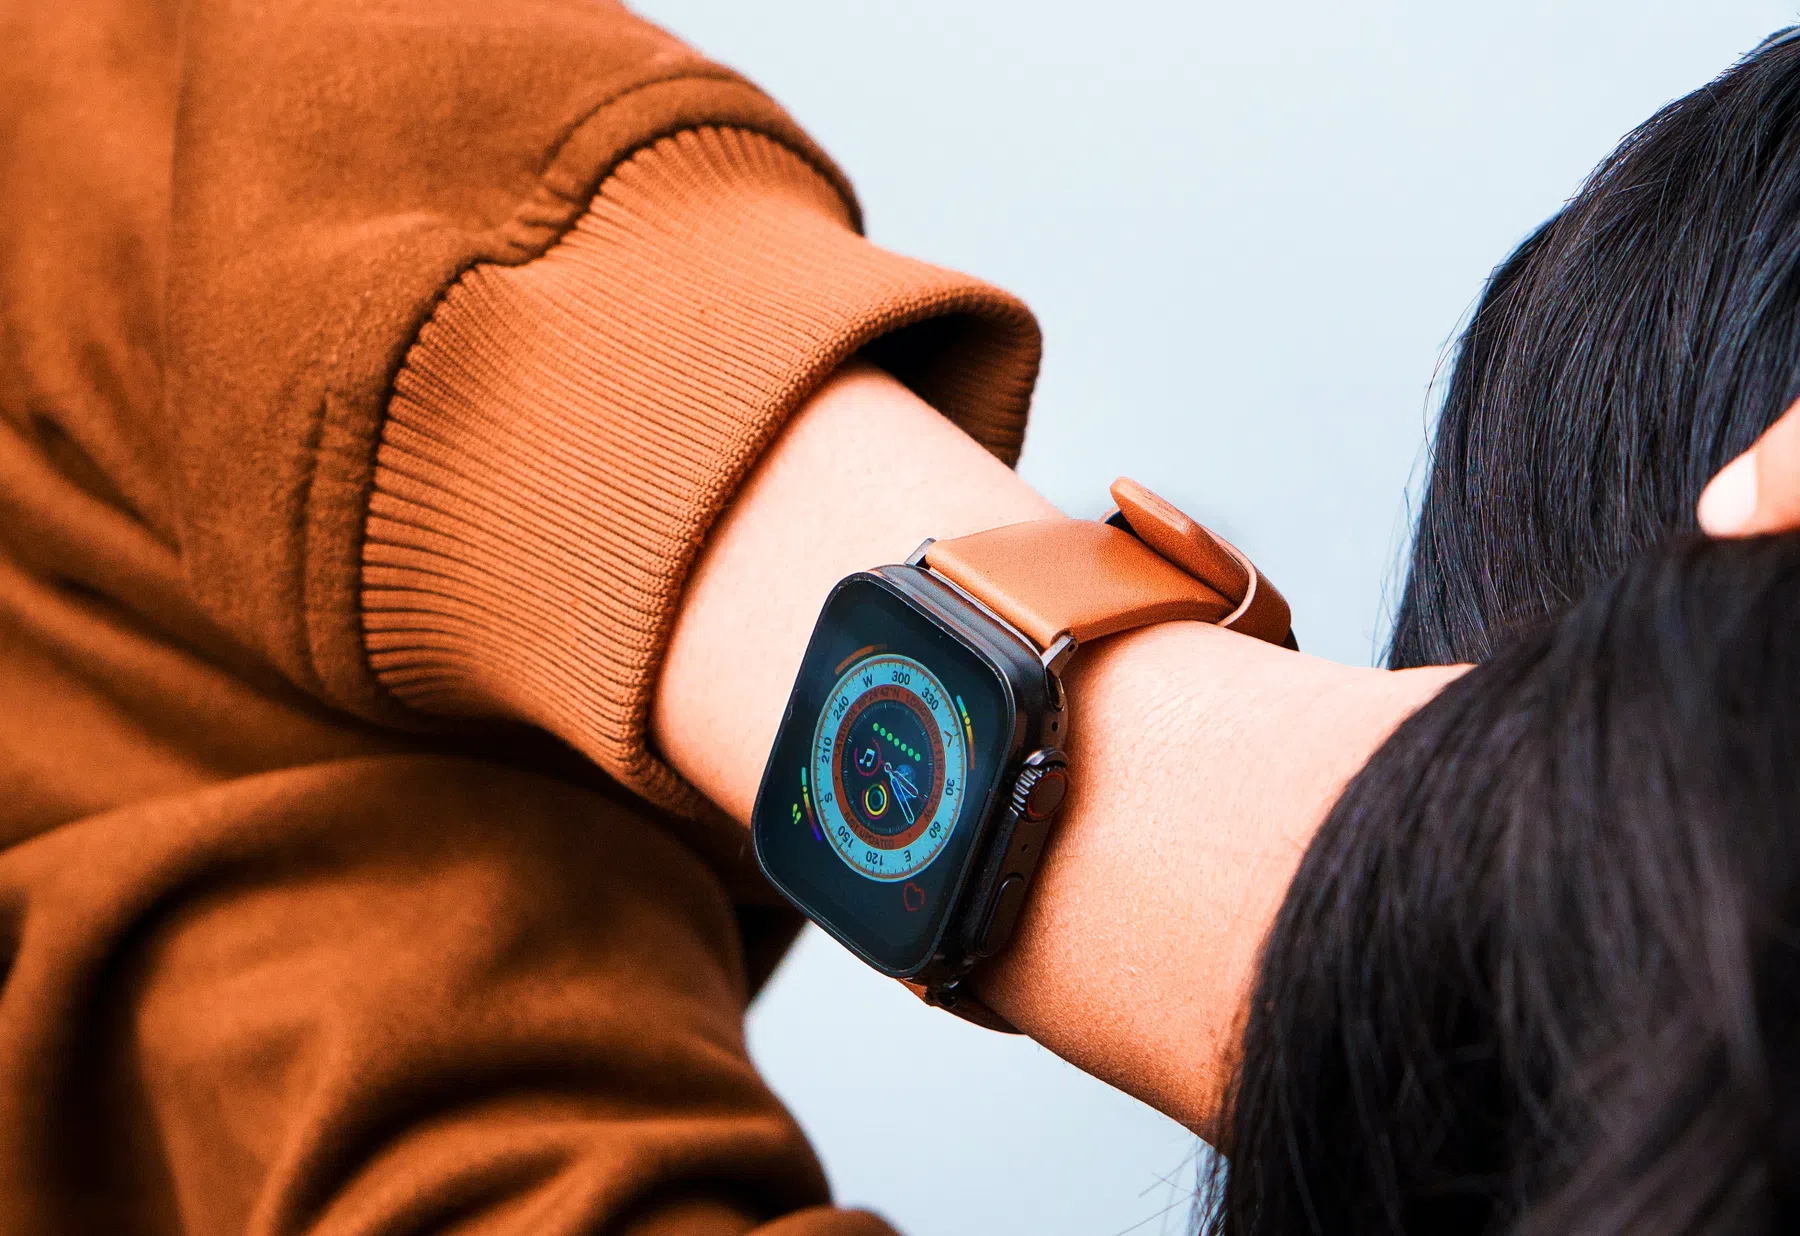 Apple neemt rigoureus besluit en schrapt veelgebruikte functie uit Apple Watch